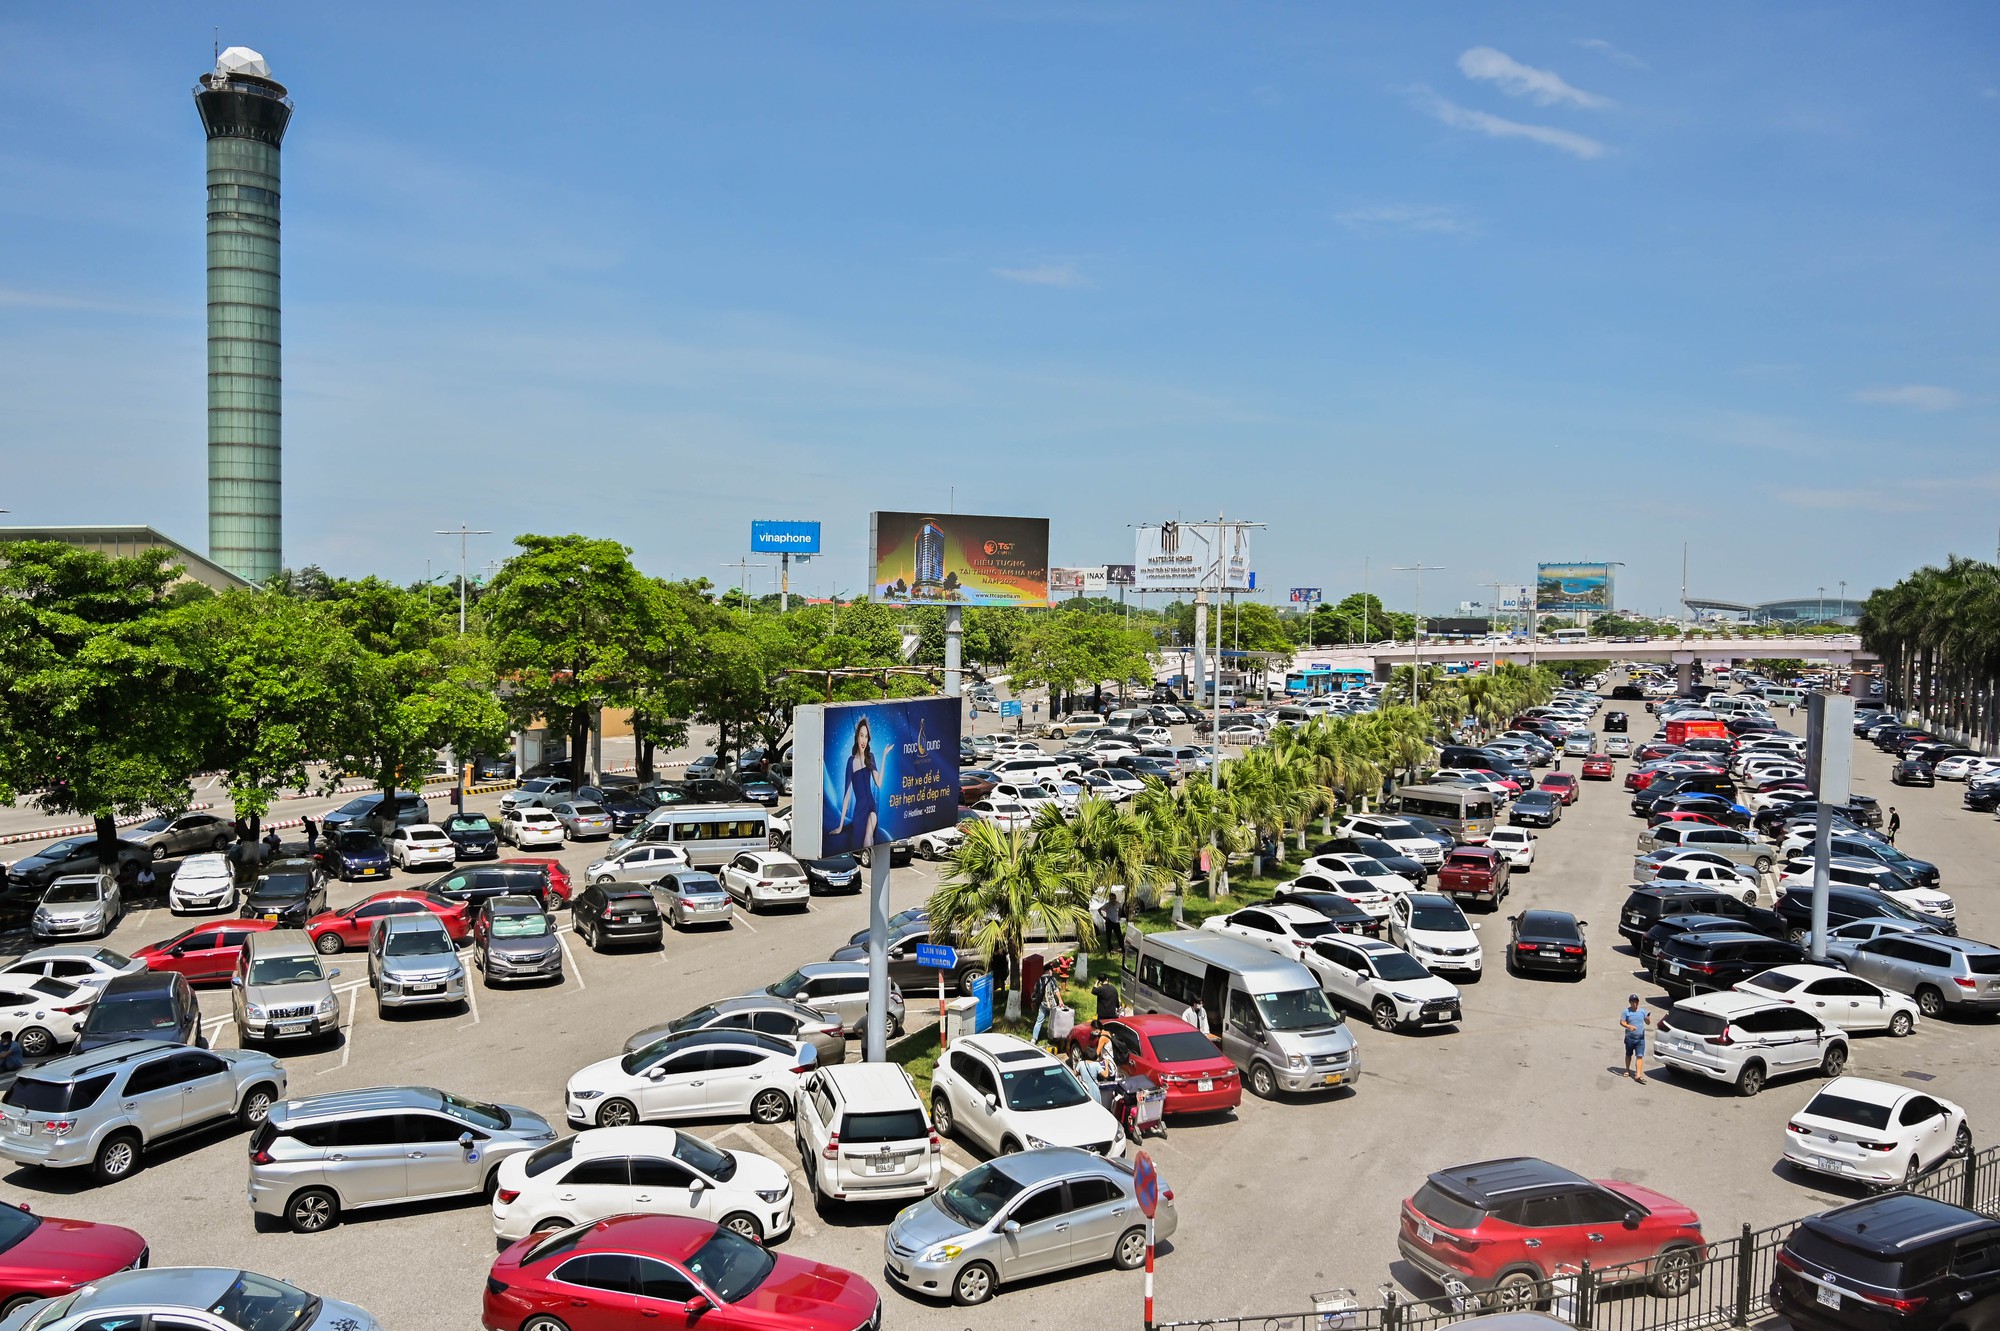 Sân bay Nội Bài quá tải, tắc từ bãi đỗ xe đến cửa an ninh - Ảnh 10.